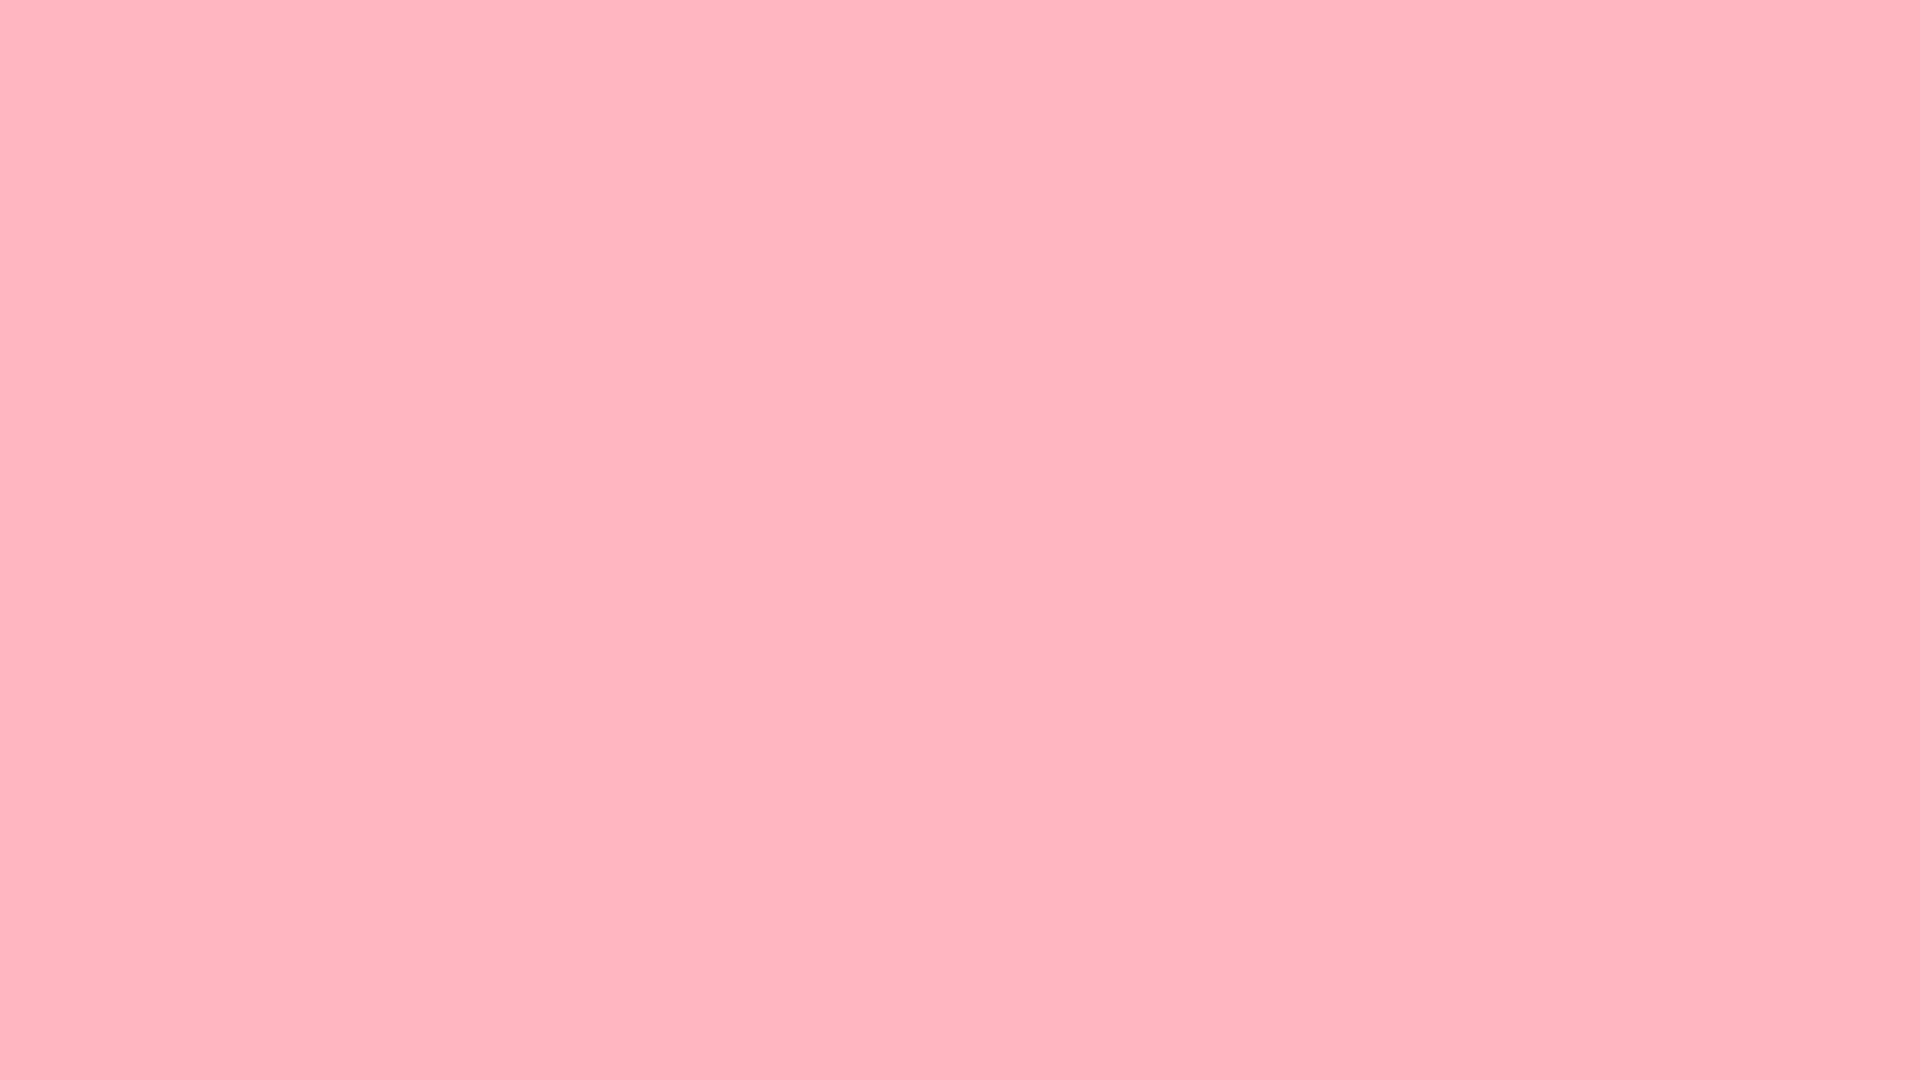 Pink Aesthetic Wallpaper Desktop Hd ~ Pinterest Blog 45+ Aesthetic